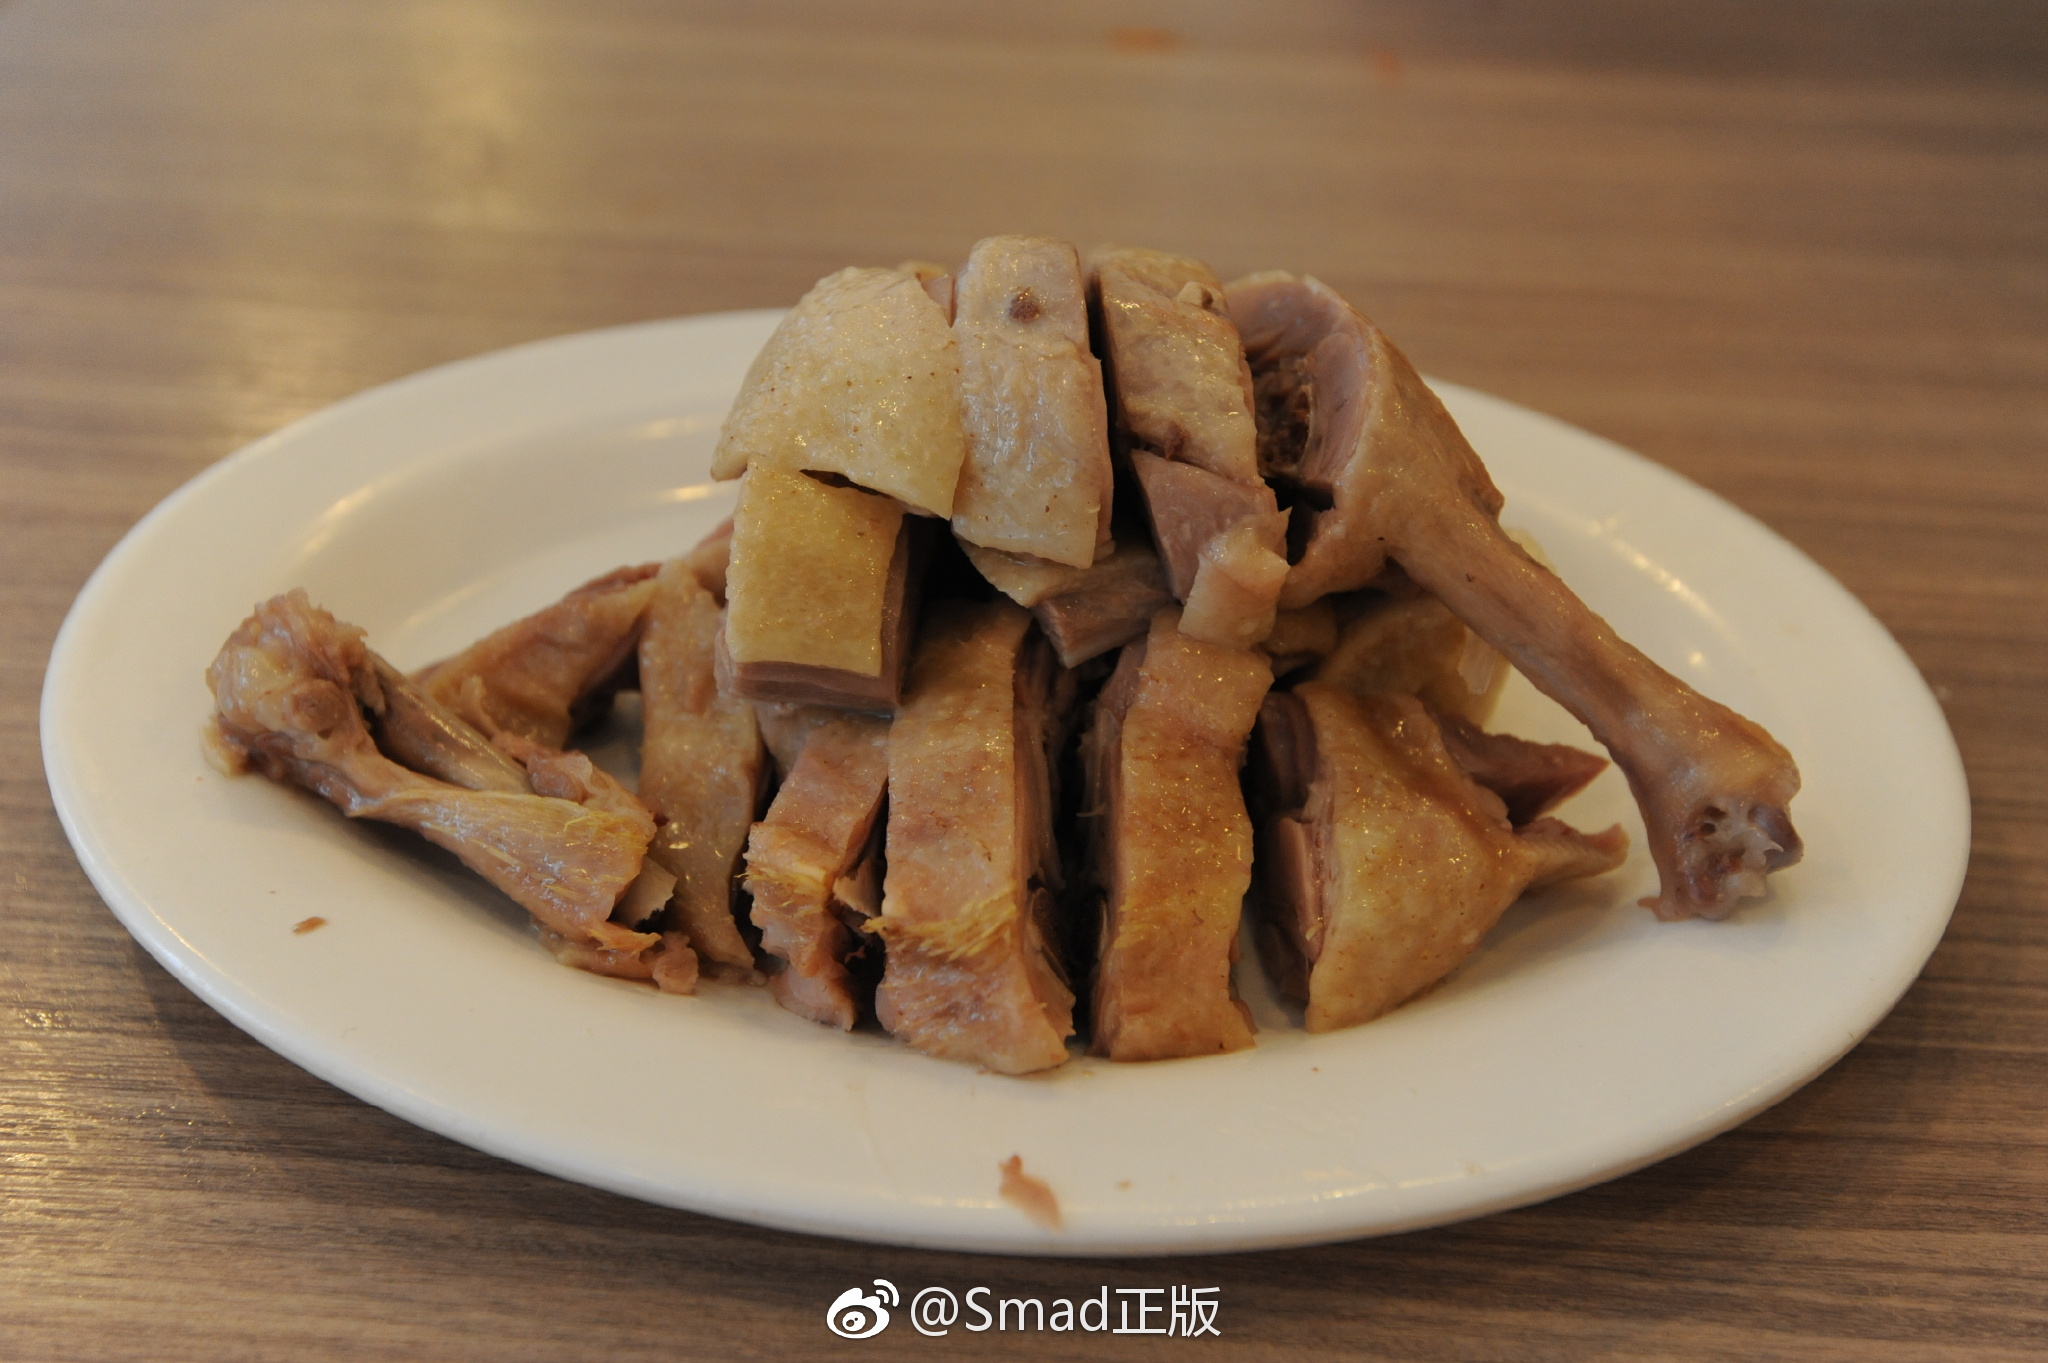 老上海的老牌美食餐厅之一,云南路上的小金陵盐水鸭